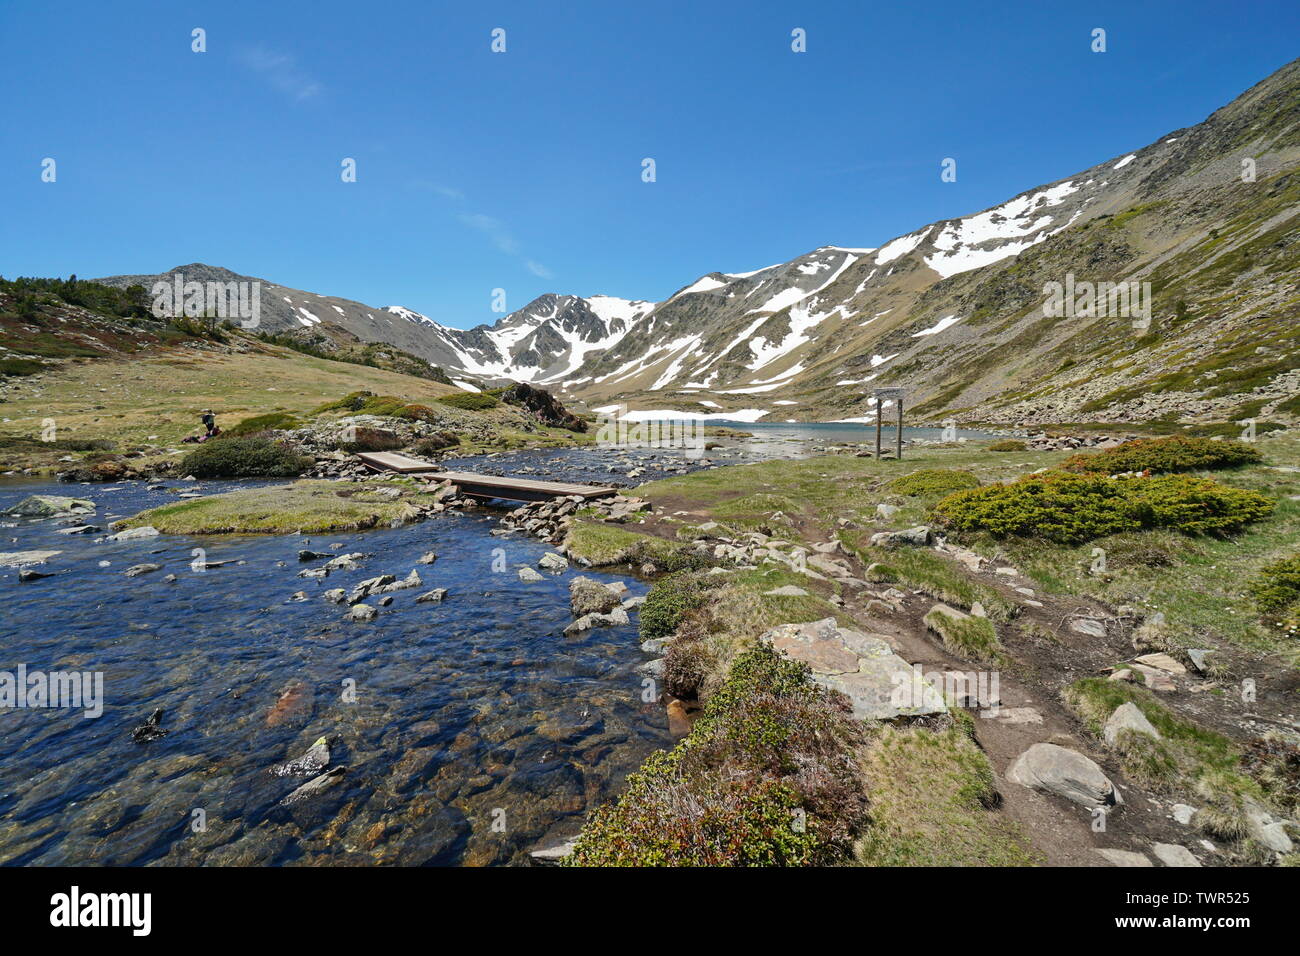 Francia Pirenei paesaggio di montagna, stream e Trebens lago con Carlit massiccio in background, parco naturale dei Pirenei catalani Foto Stock